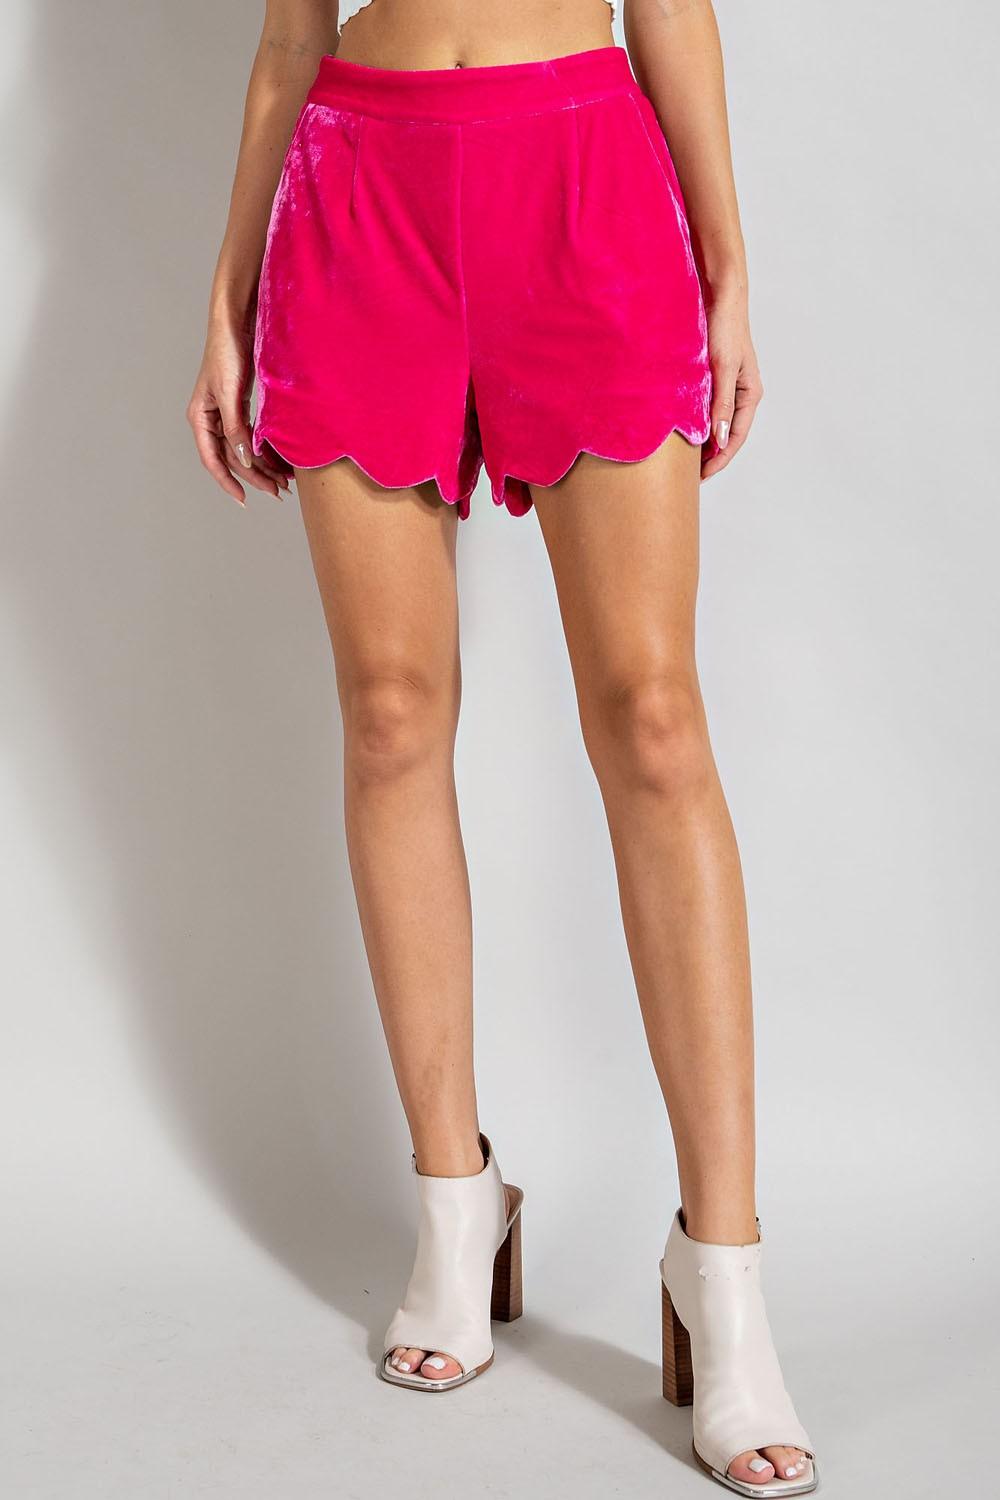 scallop hem velvet shorts - RK Collections Boutique